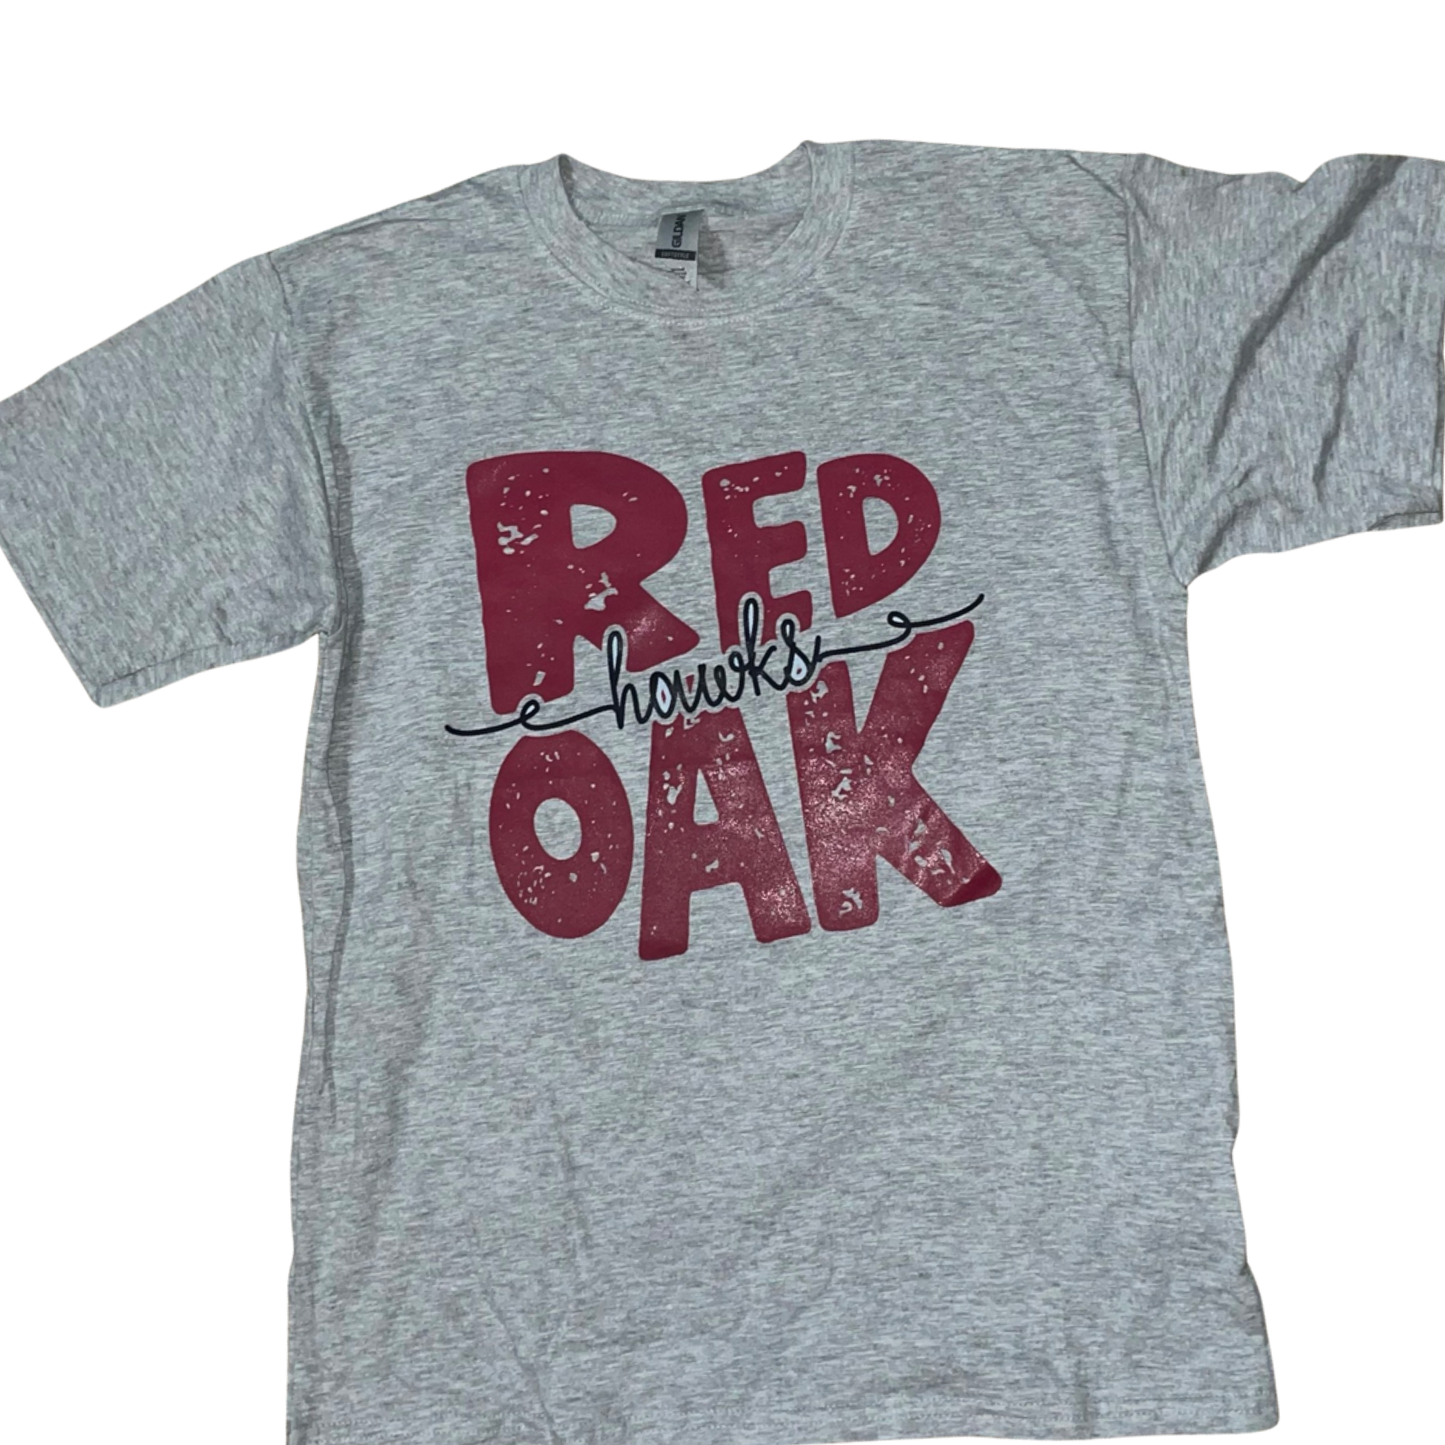 Red Oak spirit shirt